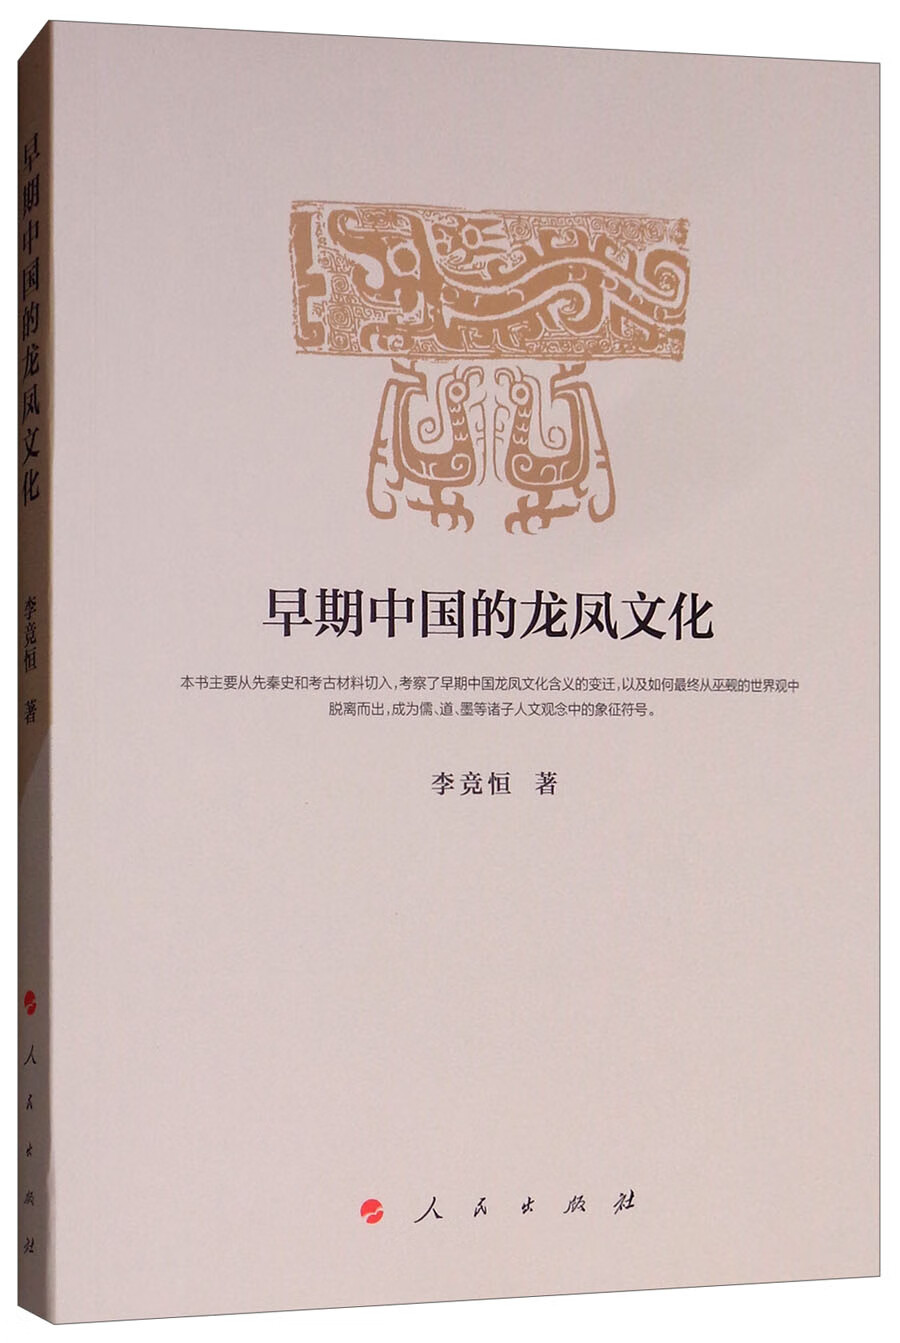 早期中国的龙凤文化 pdf格式下载